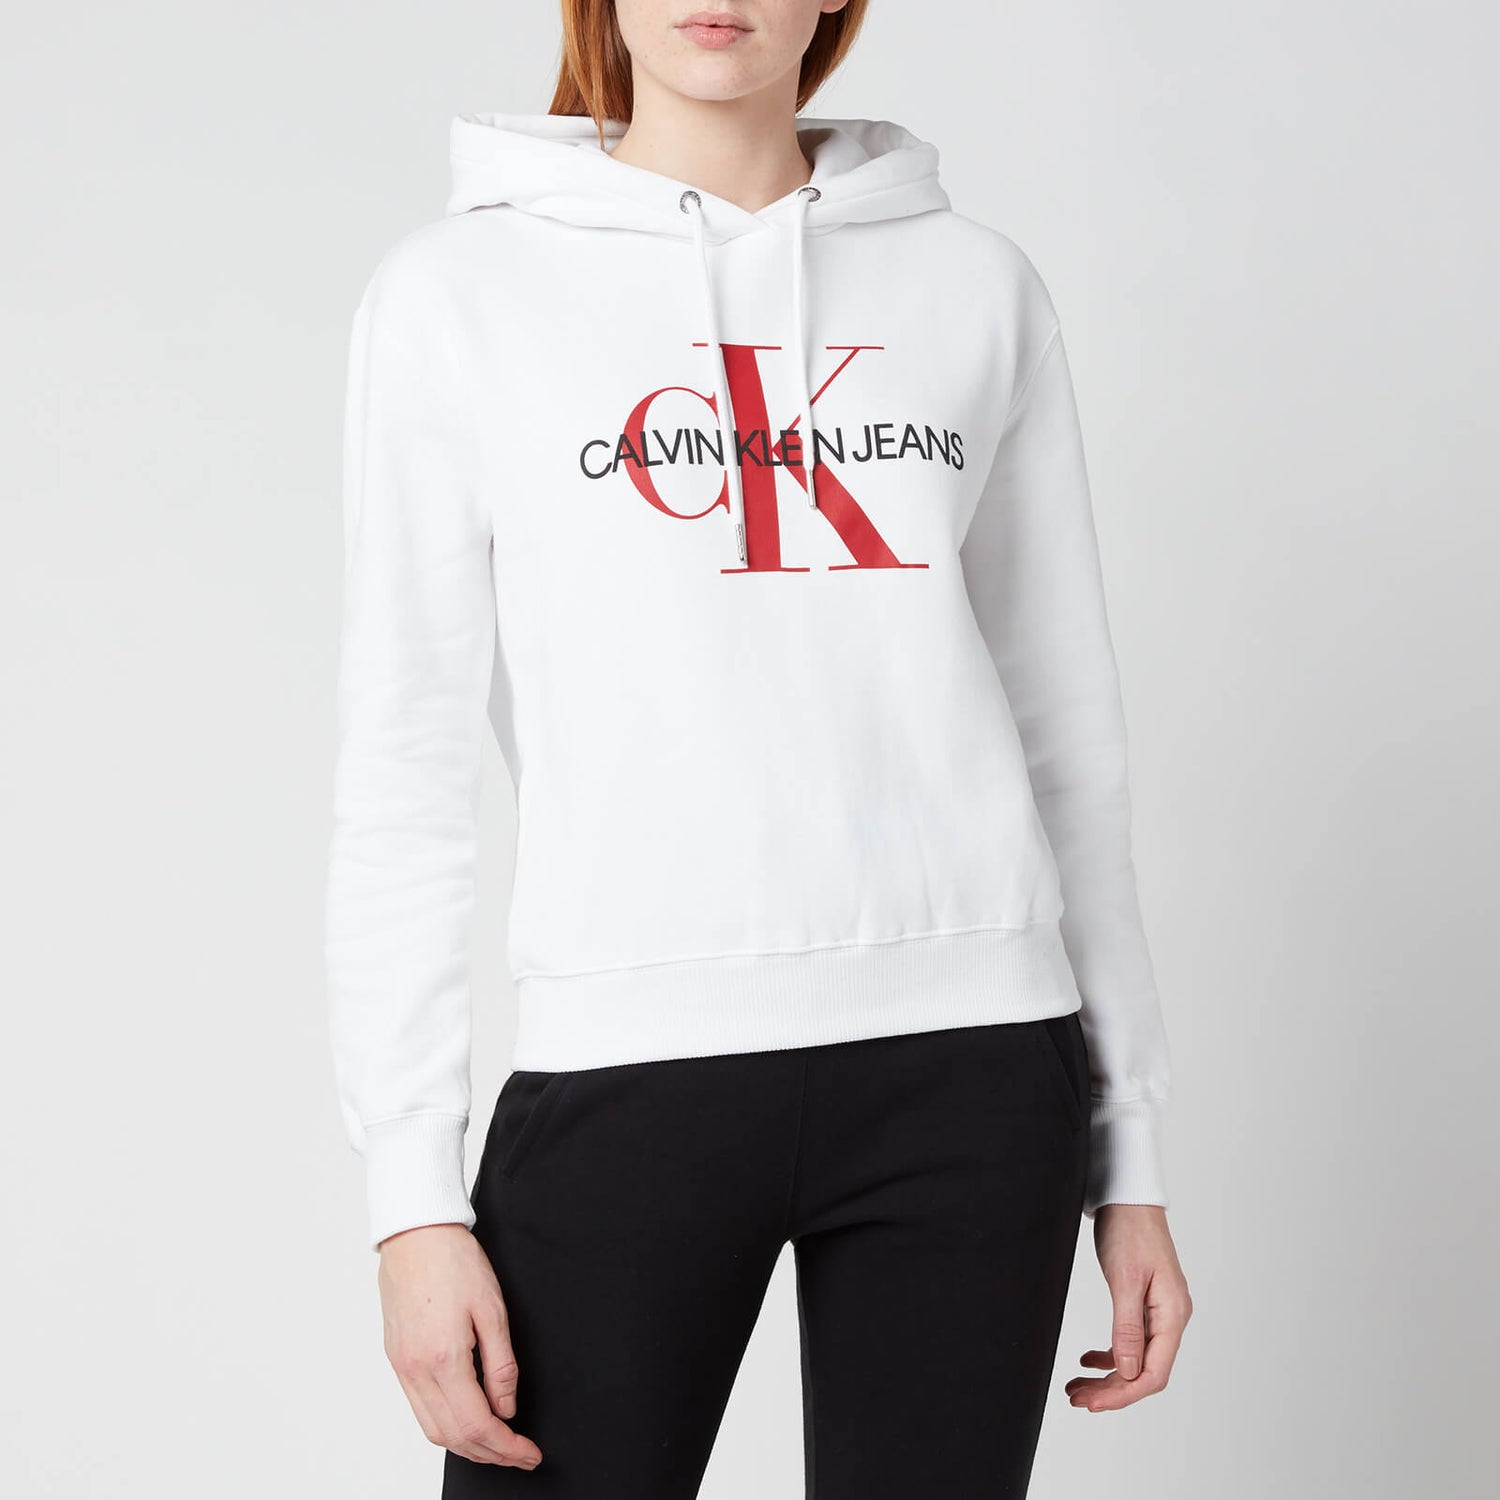 Calvin Klein Jeans Women's Crop Monogram Hoodie - Bright White